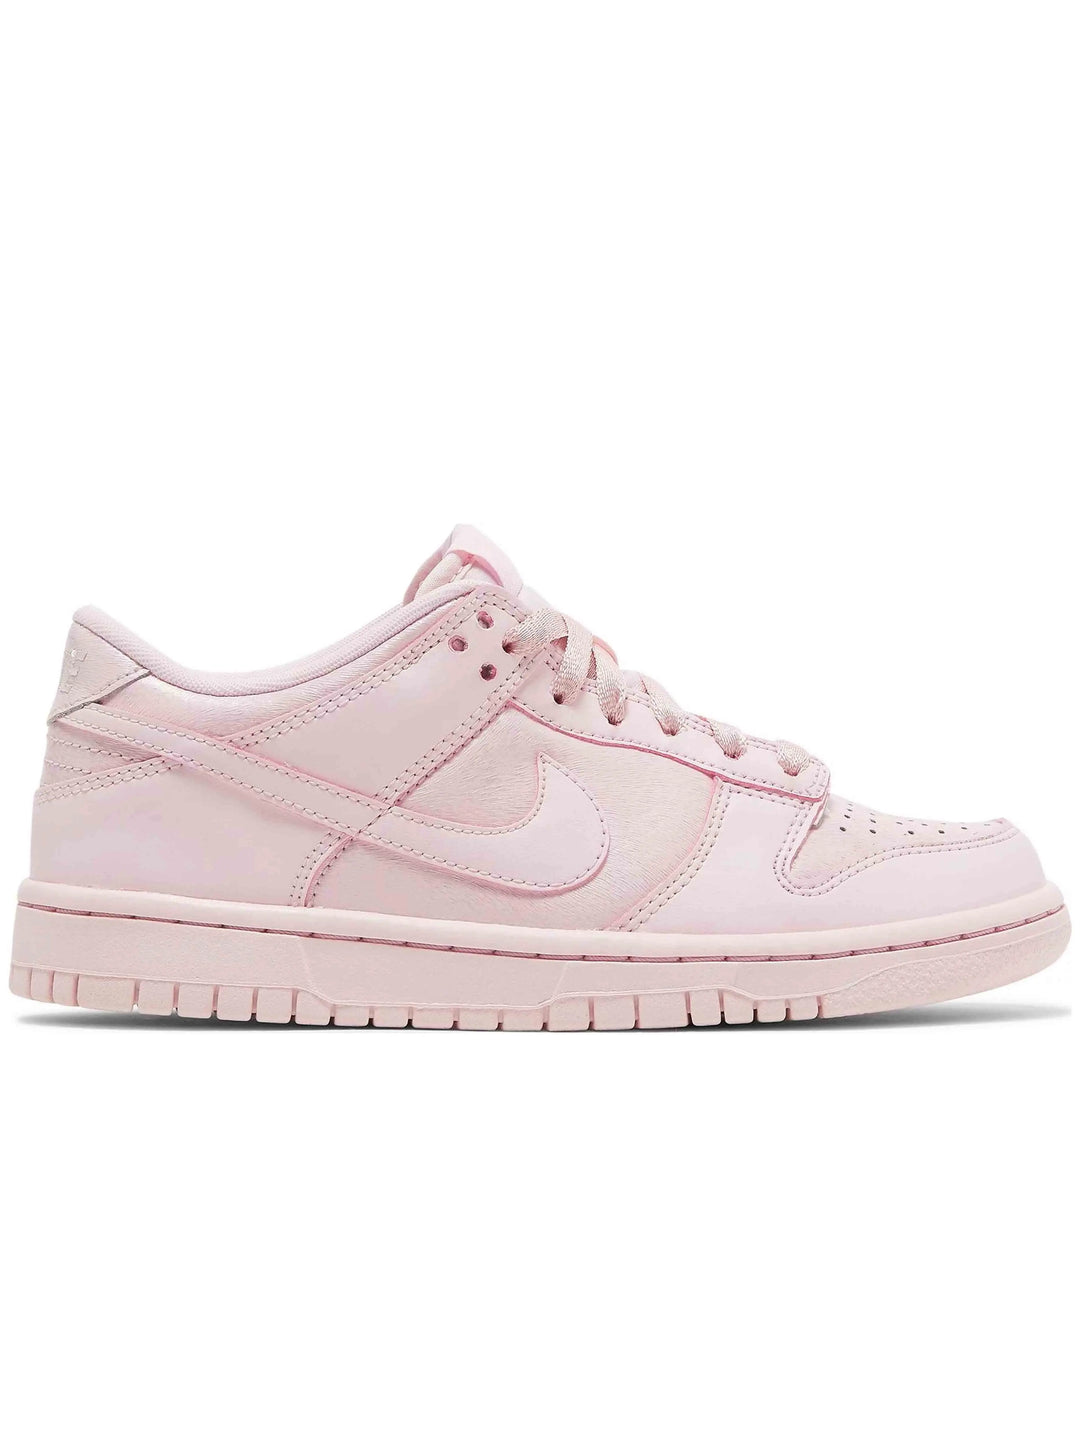 Nike Dunk Low SE Prism Pink [GS] Prior